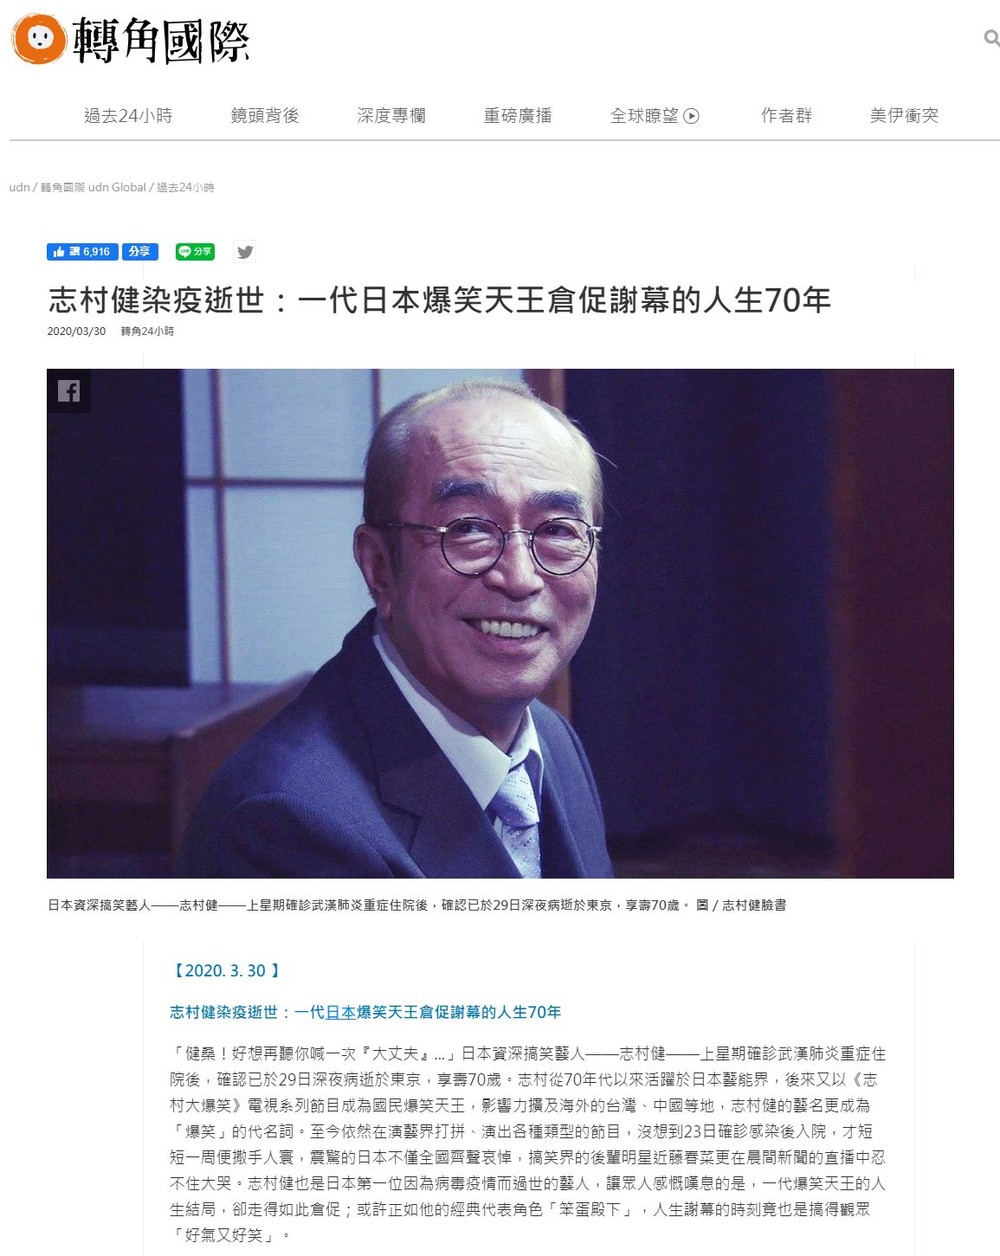 志村さんの死去を伝える台湾のニュースサイト